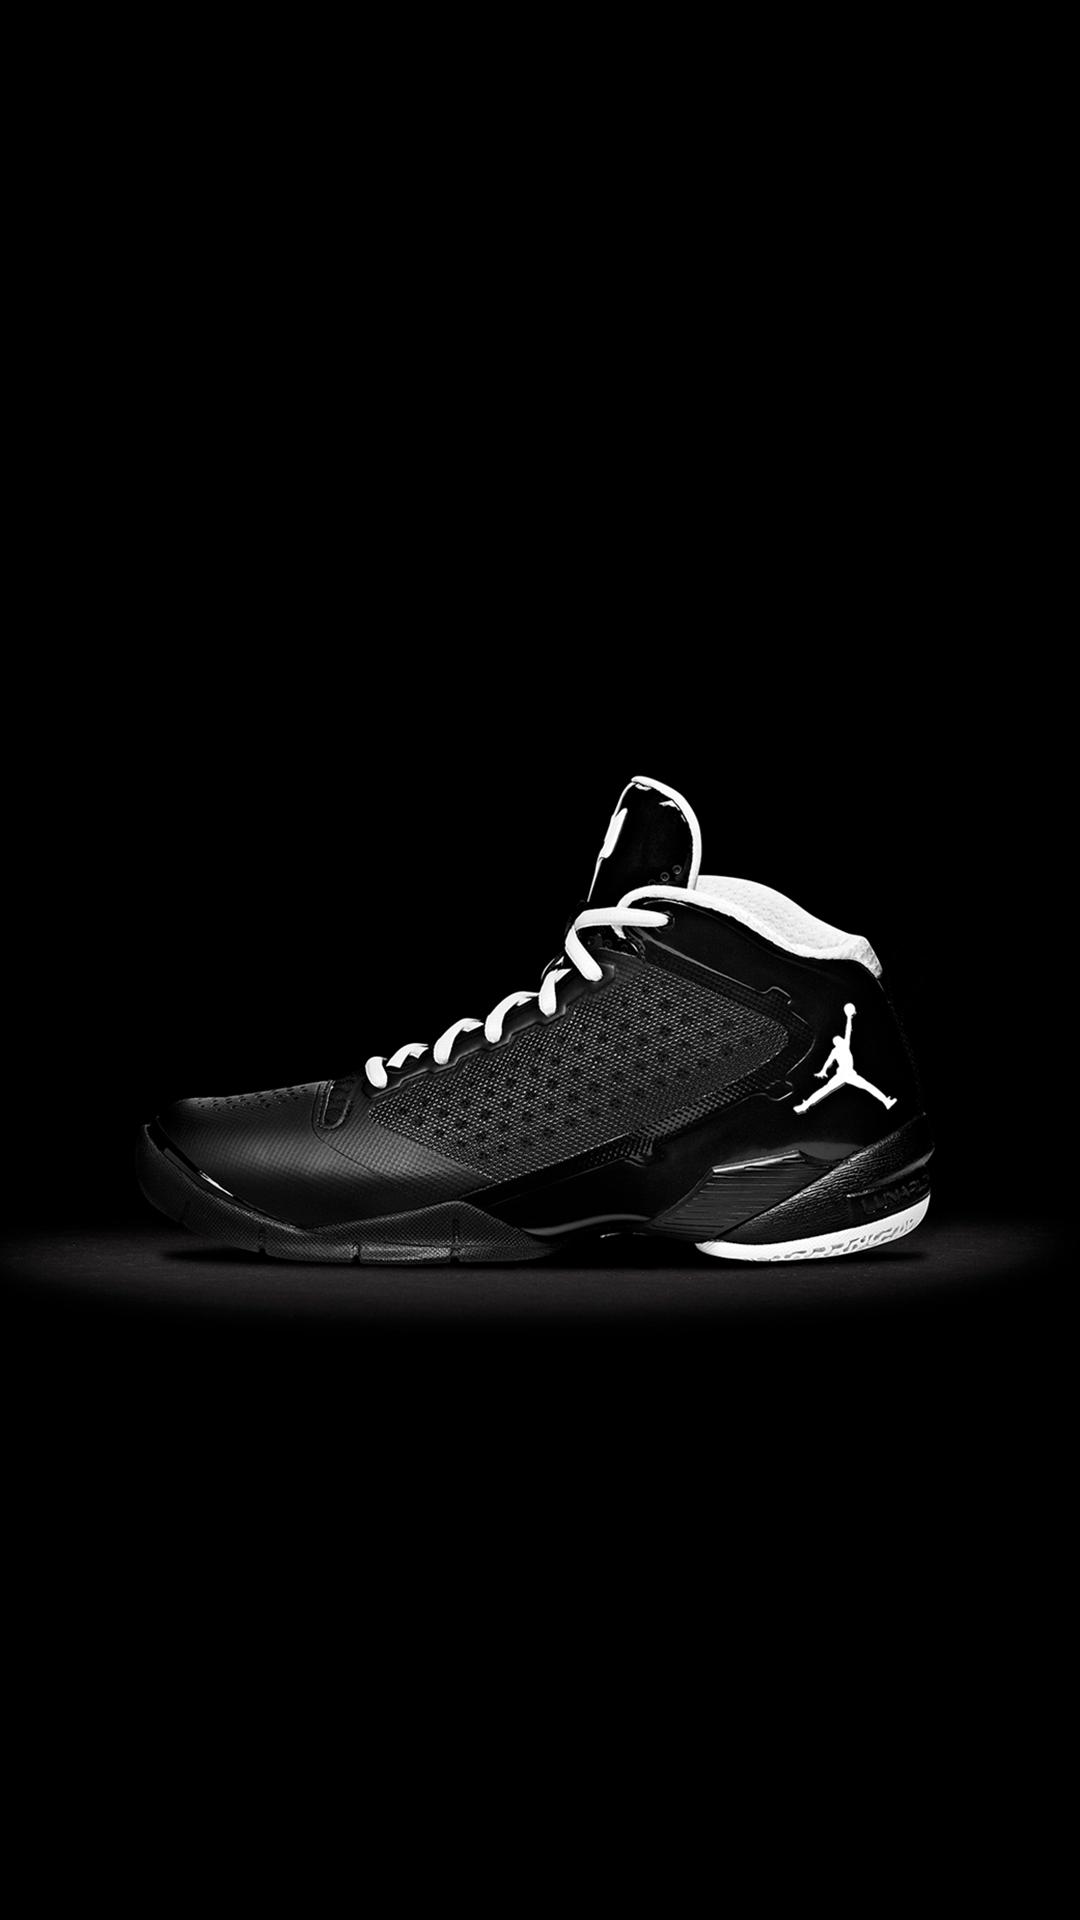 1080x1920 Jordan Fly Wade Nike Shoe Art Tải xuống miễn phí Hình nền iPhone 8